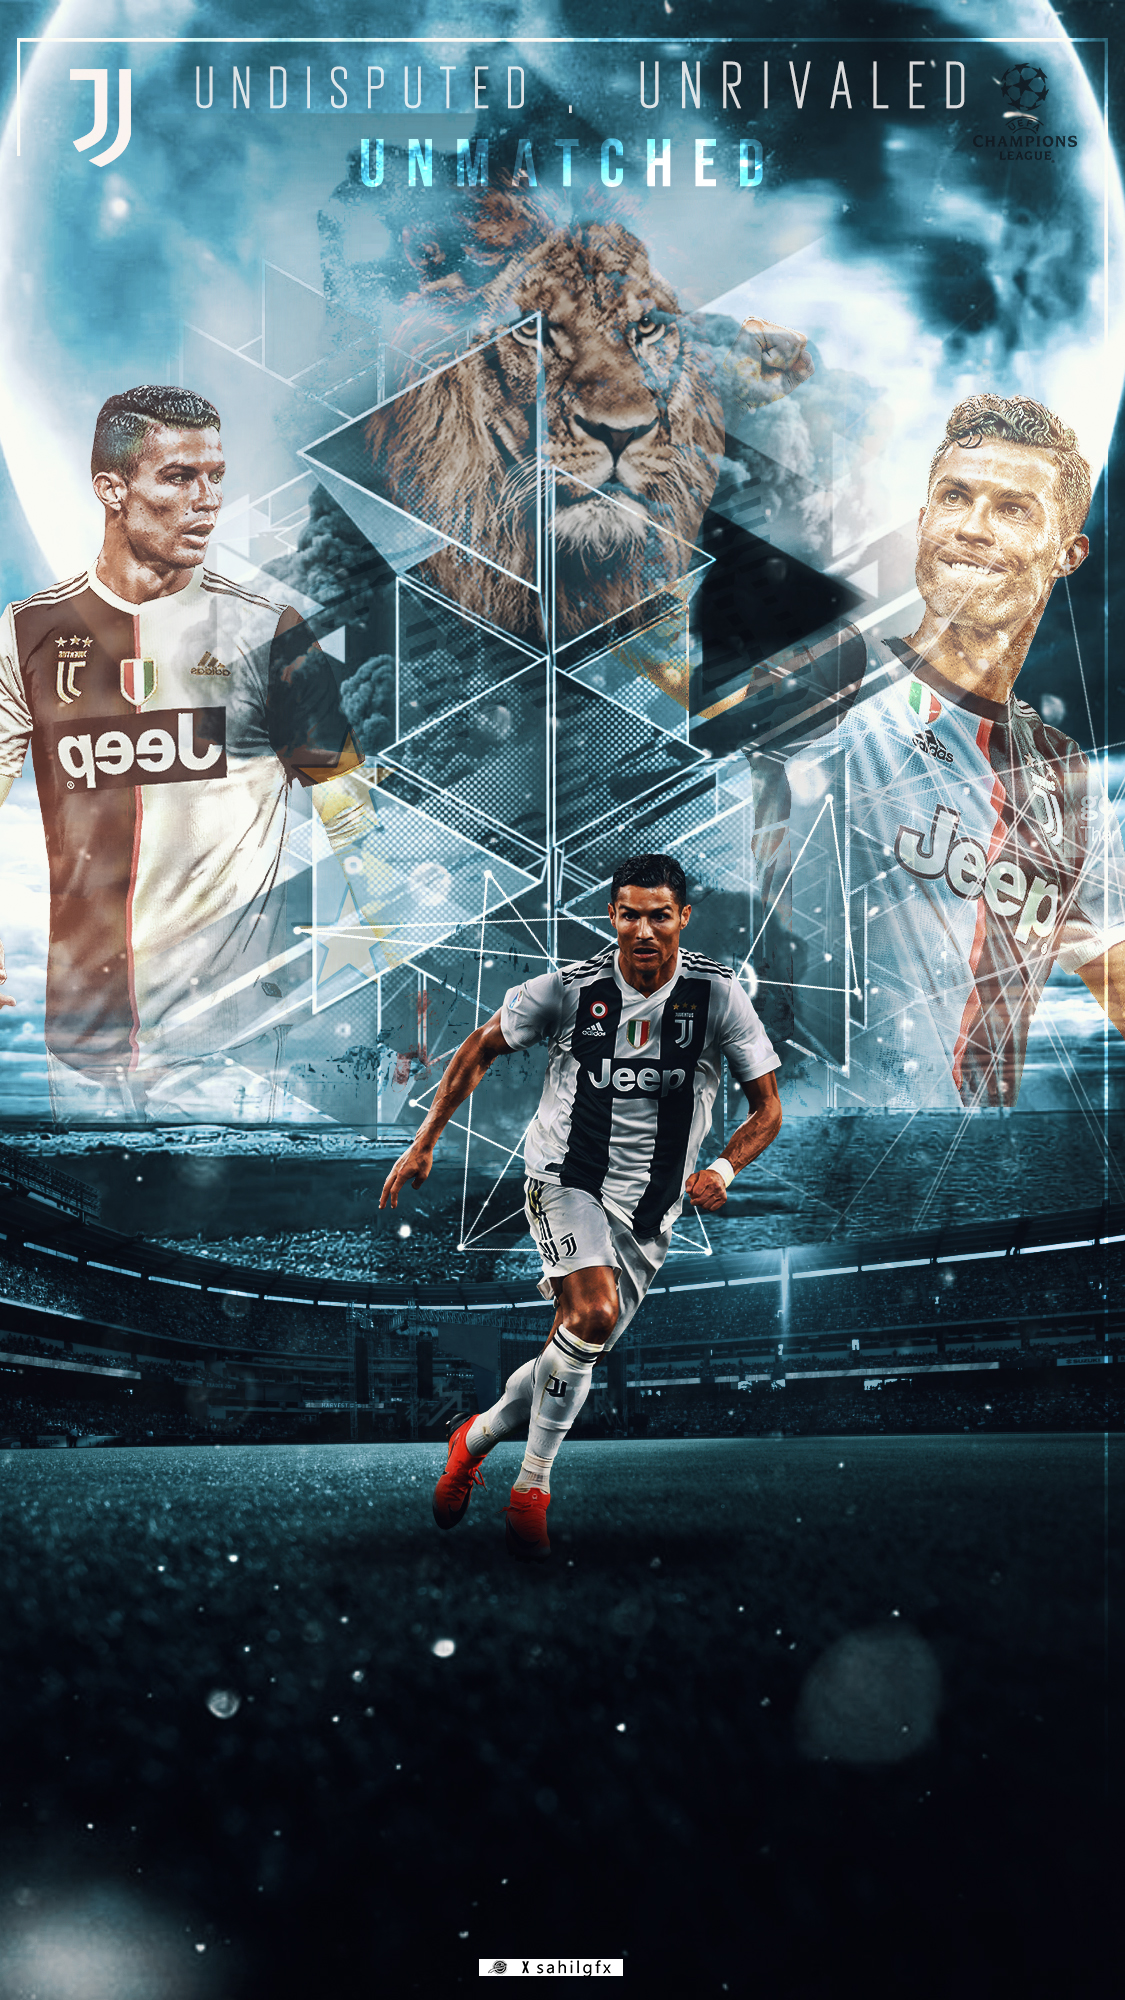 Cristiano Ronaldo Wallpaper by Fedoradouchebag on DeviantArt